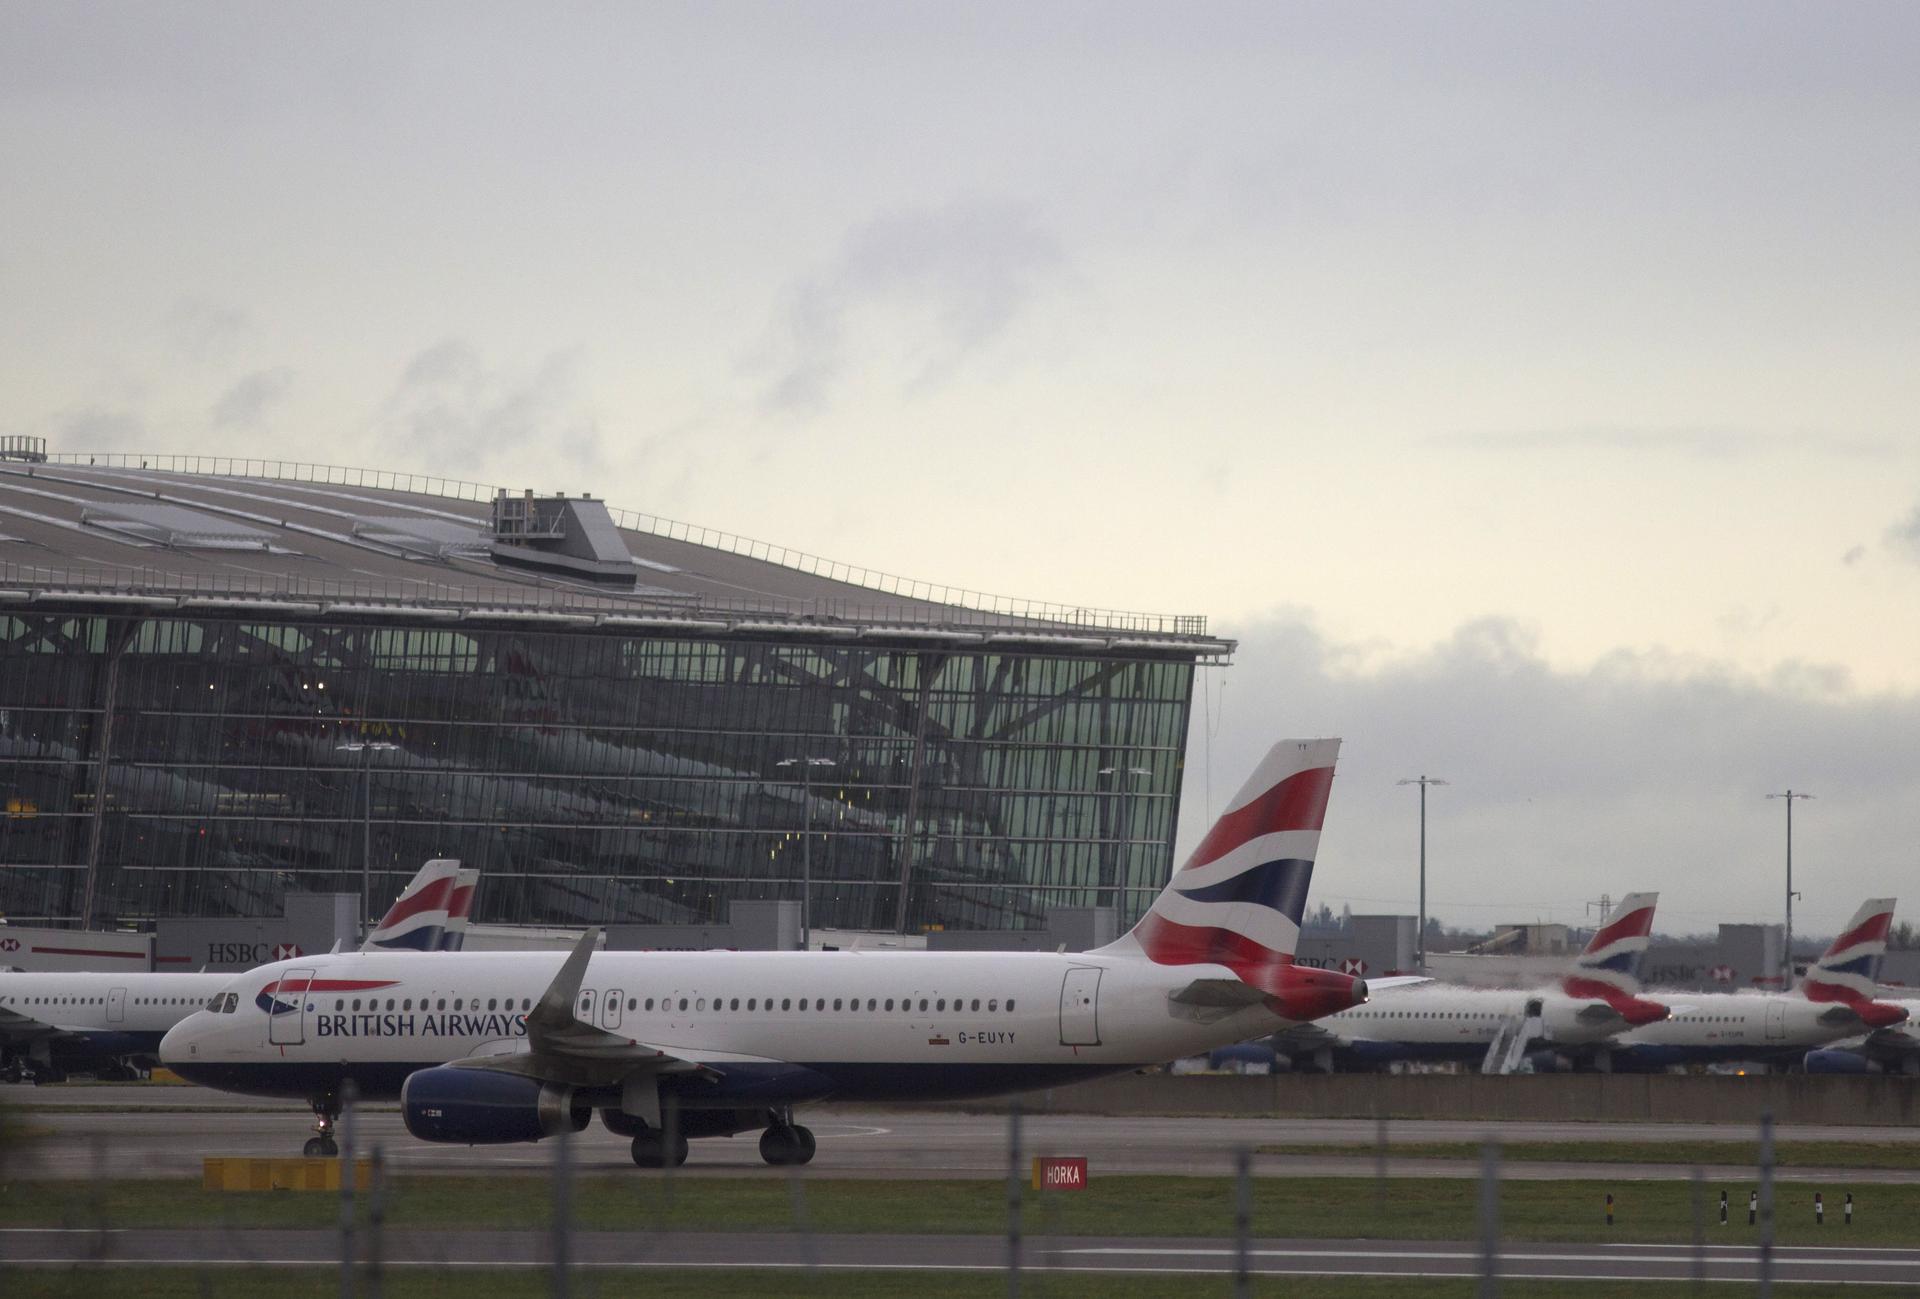 A British Airways plane taxis at Heathrow Airport near London, Britain, December 11, 2015.